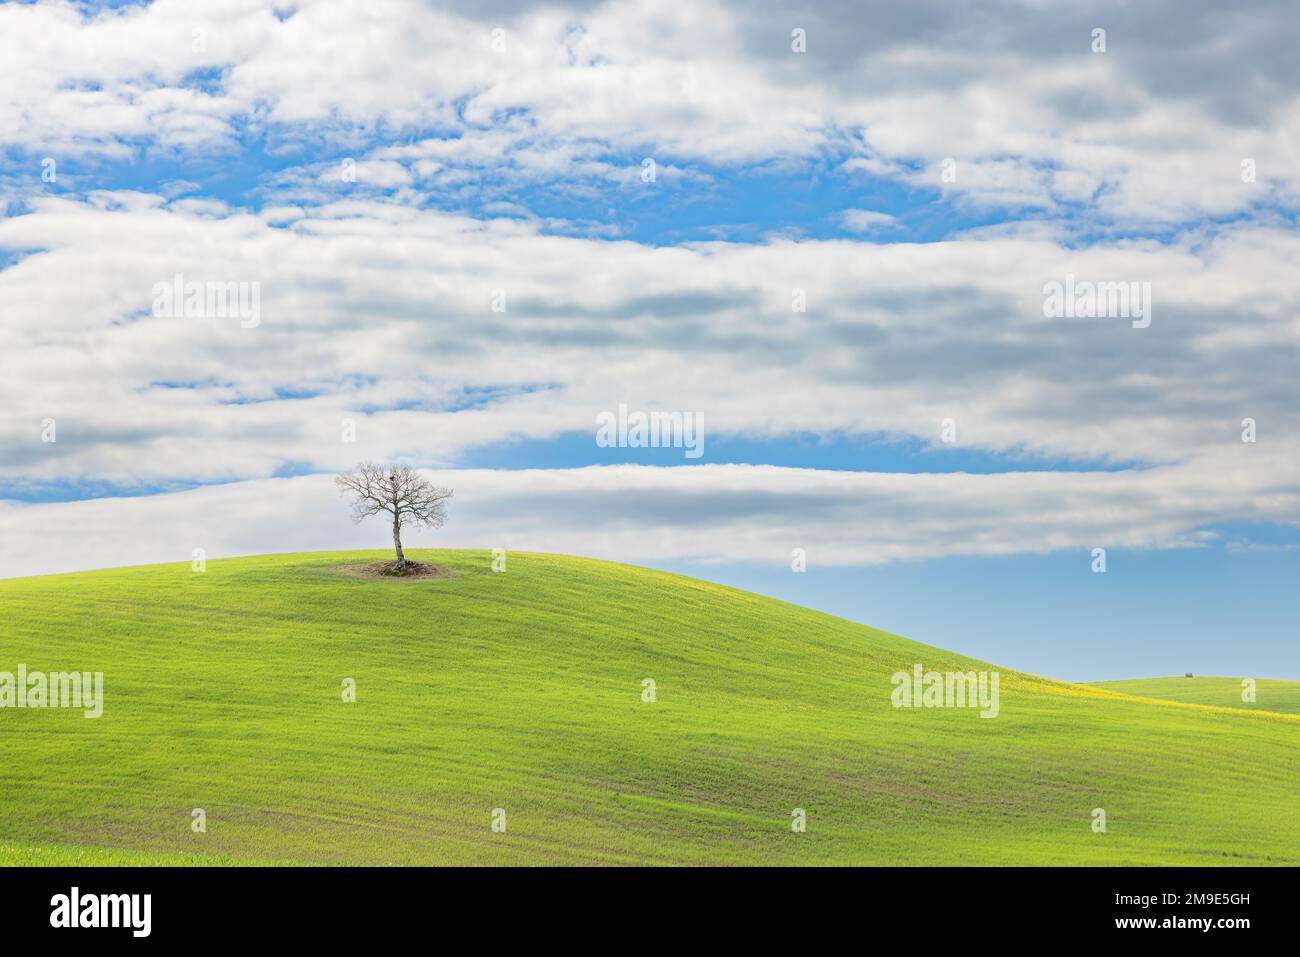 Paesaggio tipico, albero solitario su colline verdeggianti in primavera in Val d'Orcia in Toscana. Foto Stock